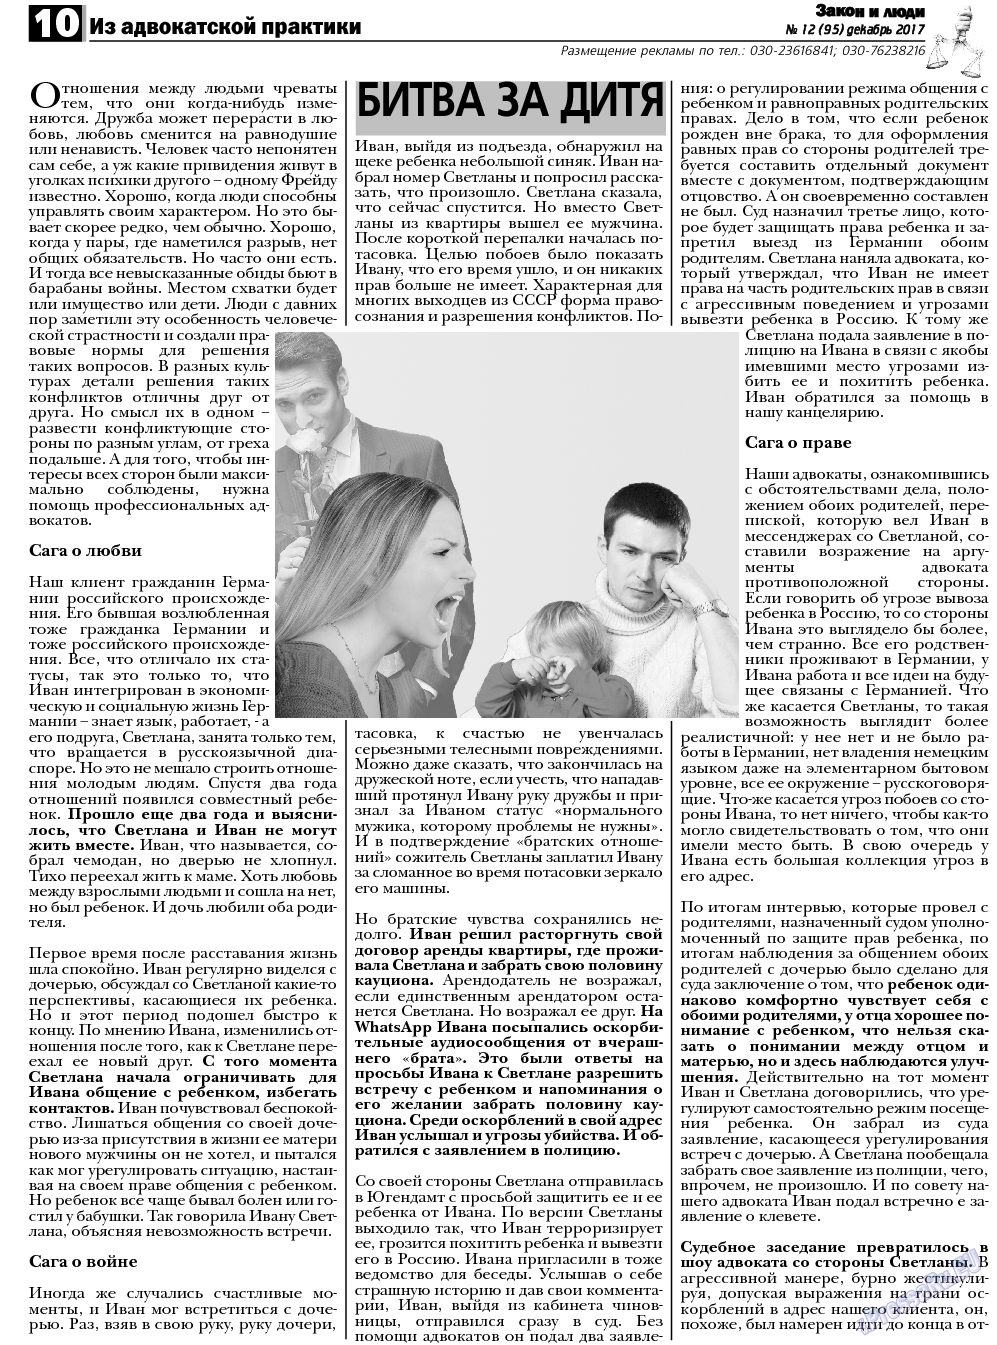 Закон и люди, газета. 2017 №12 стр.10